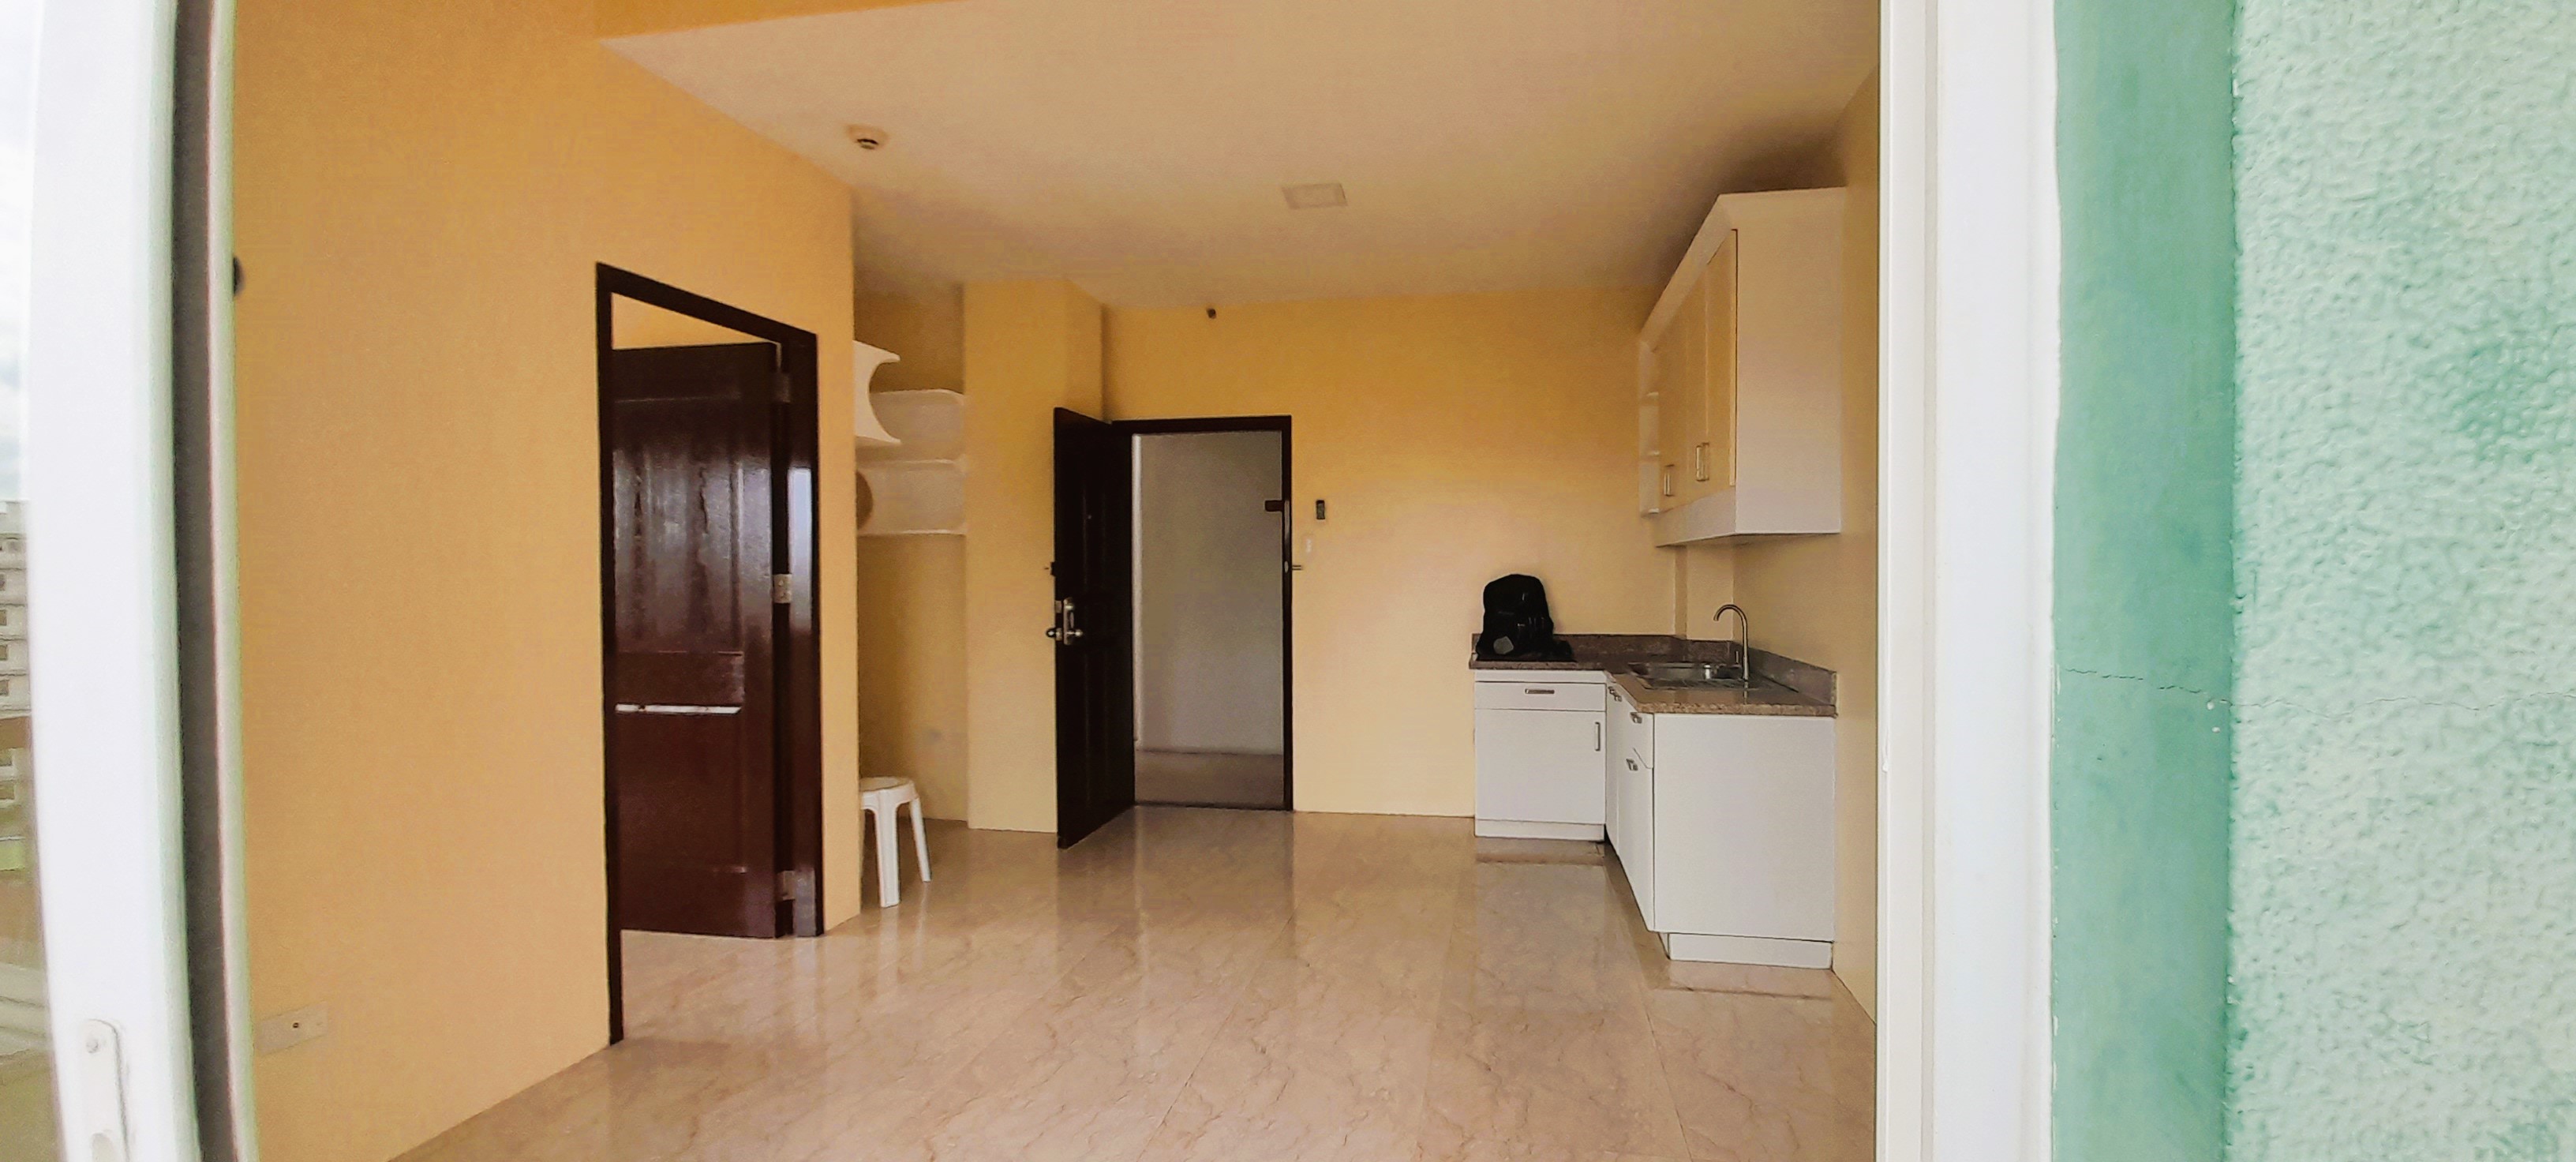 1-bedroom-with-balcony-at-spianada-condo-residences-rahman-street-cebu-city